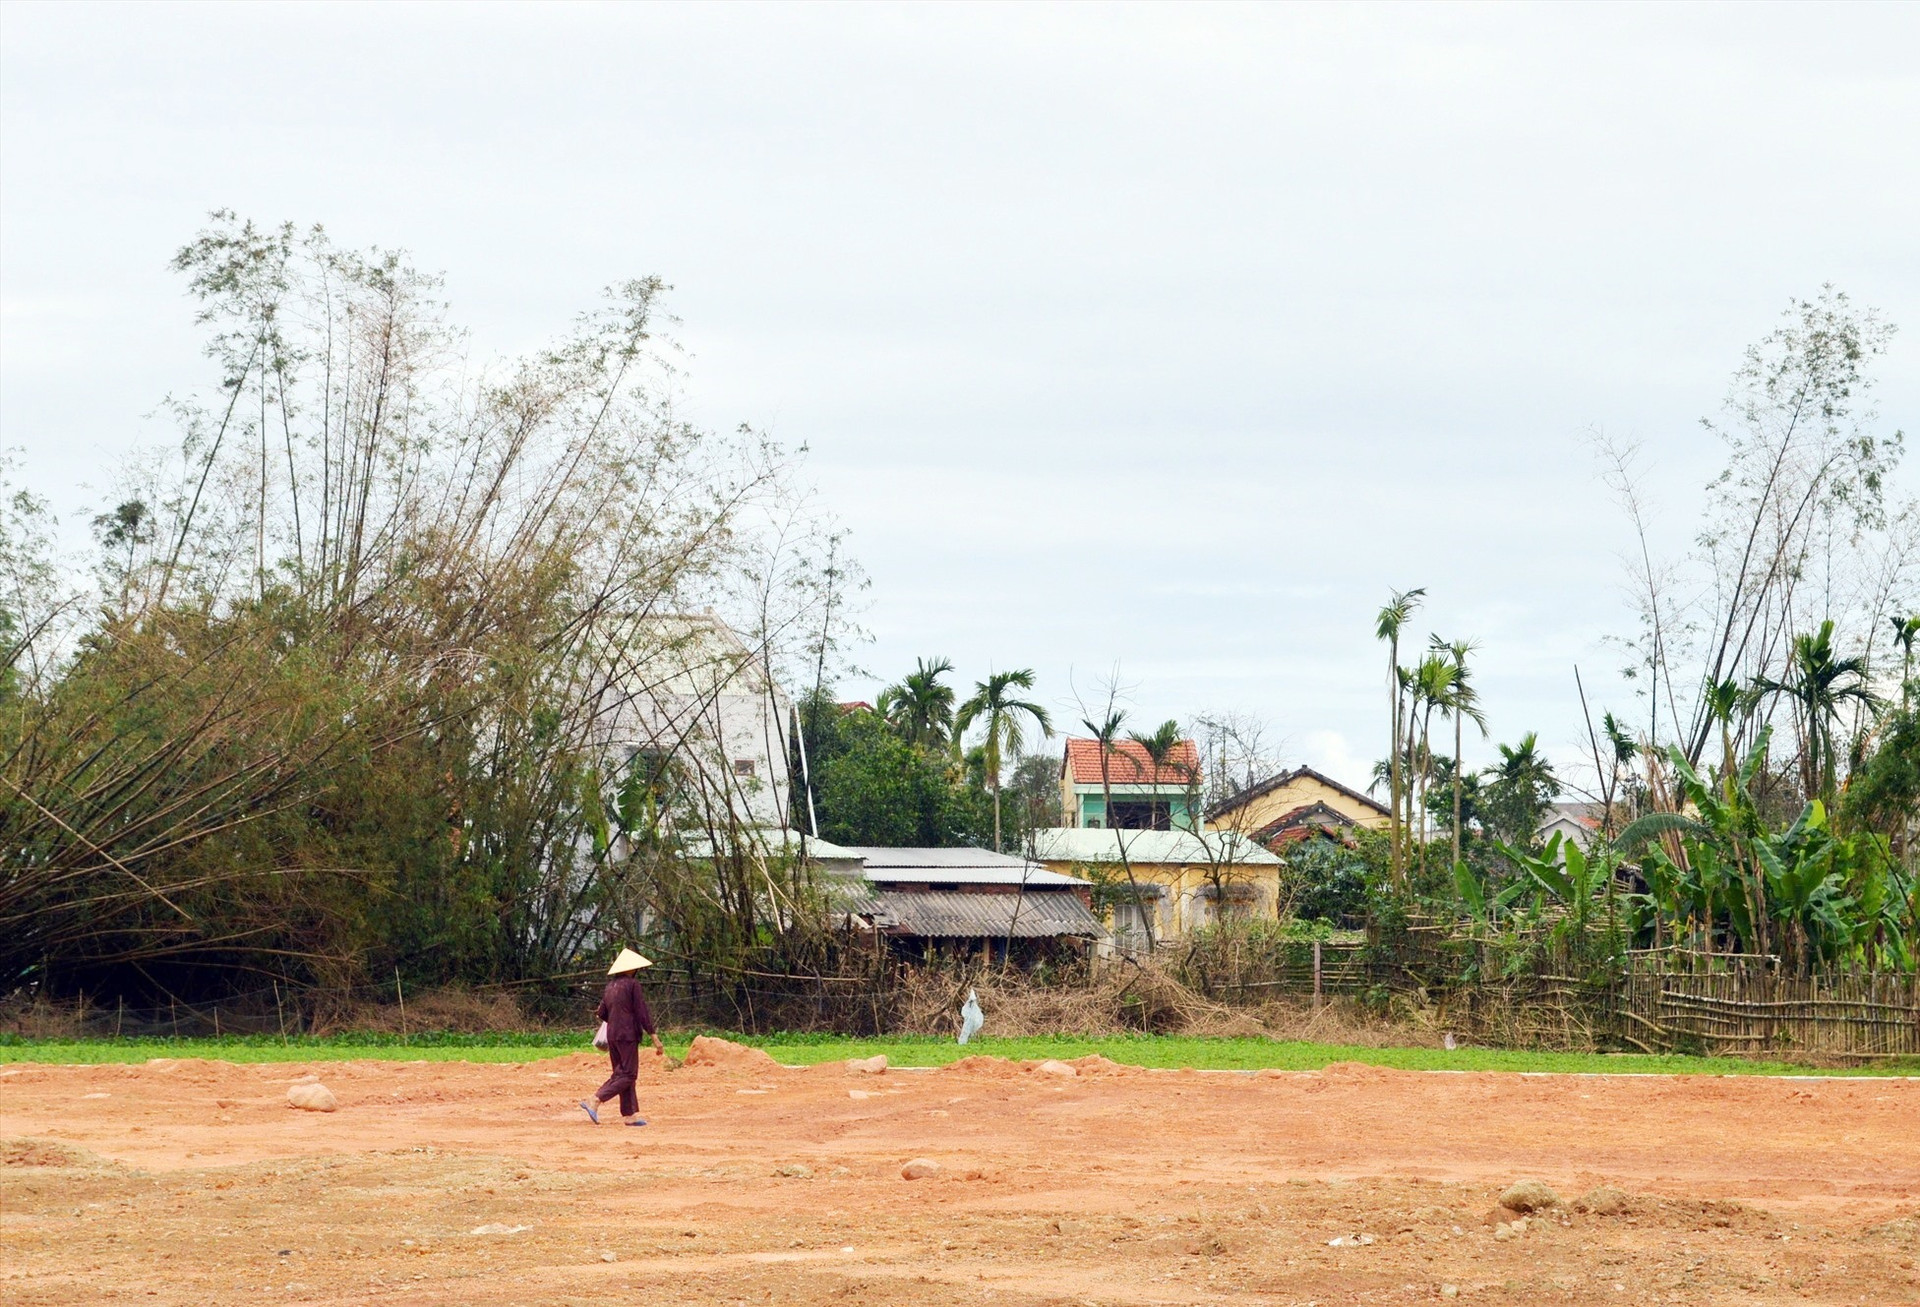 Nhiều ngôi làng điển hình xứ Quảng đang dần bê tông hóa biến thành đô thị